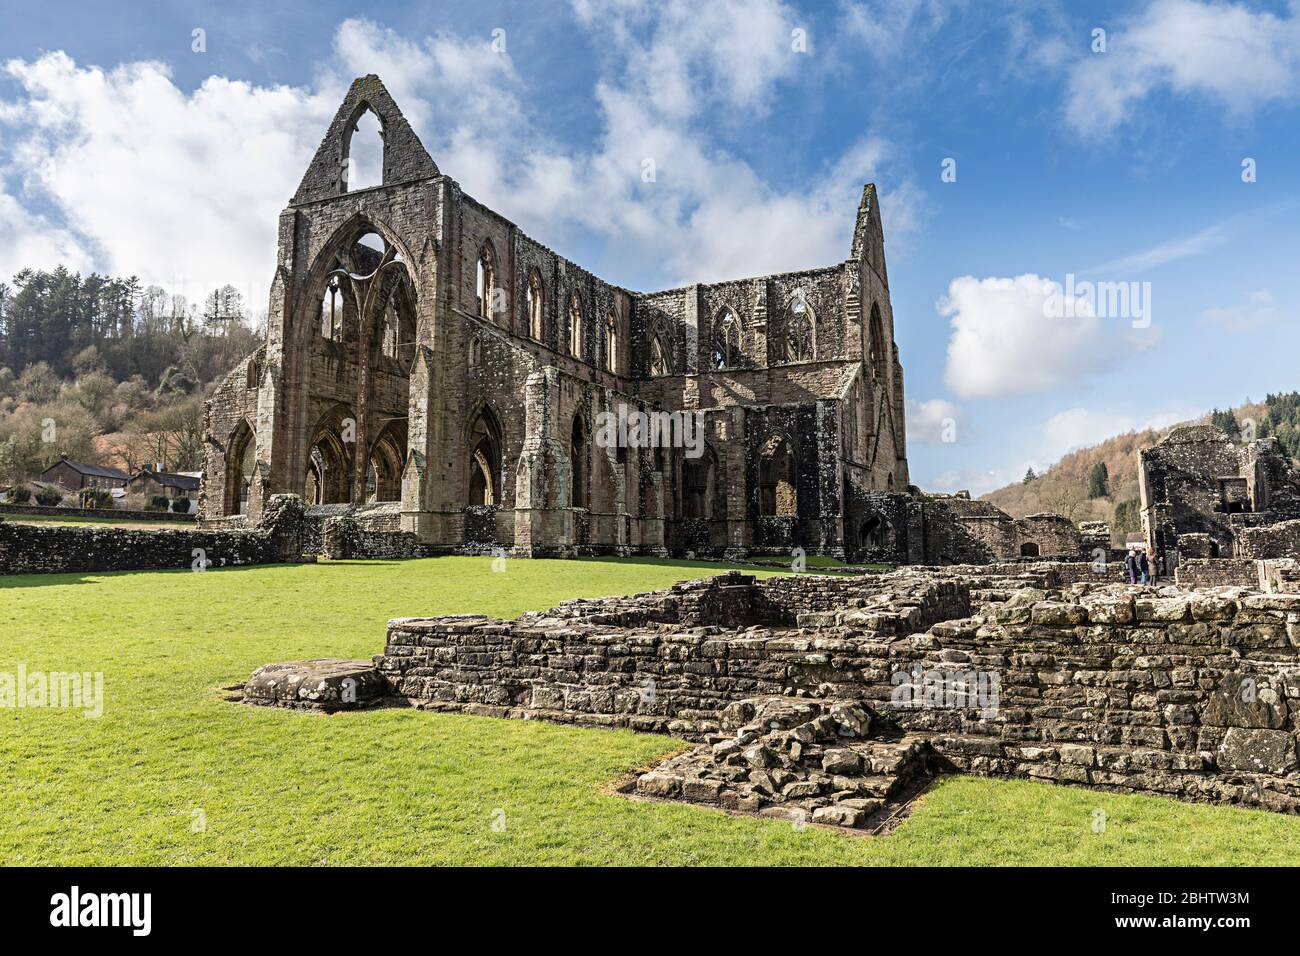 Tintern Abbey, Wales, UK Stock Photo